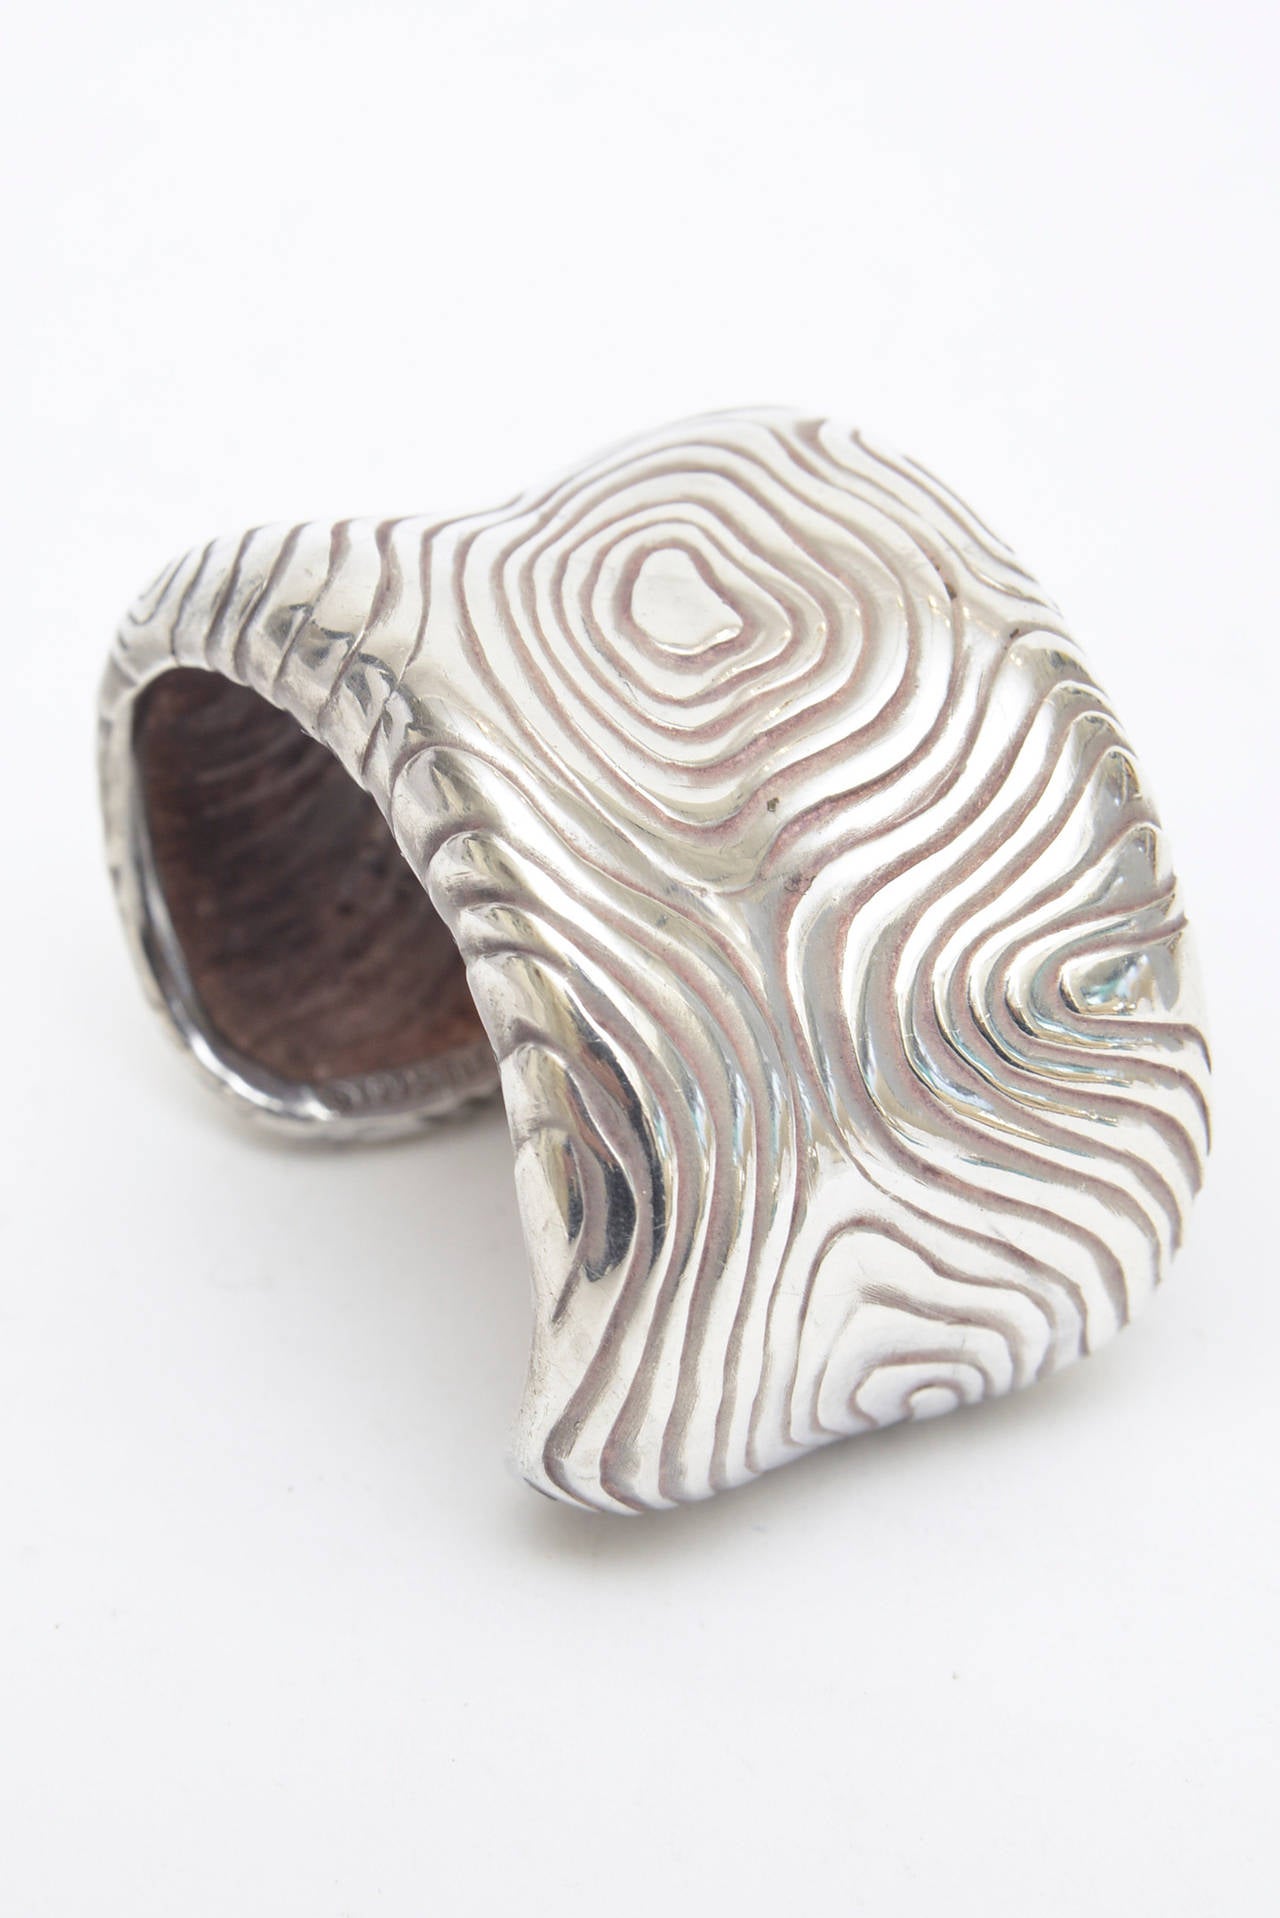 Beautiful Tiffany Sterling Silver Modernist Heavy Cuff Bracelet 1